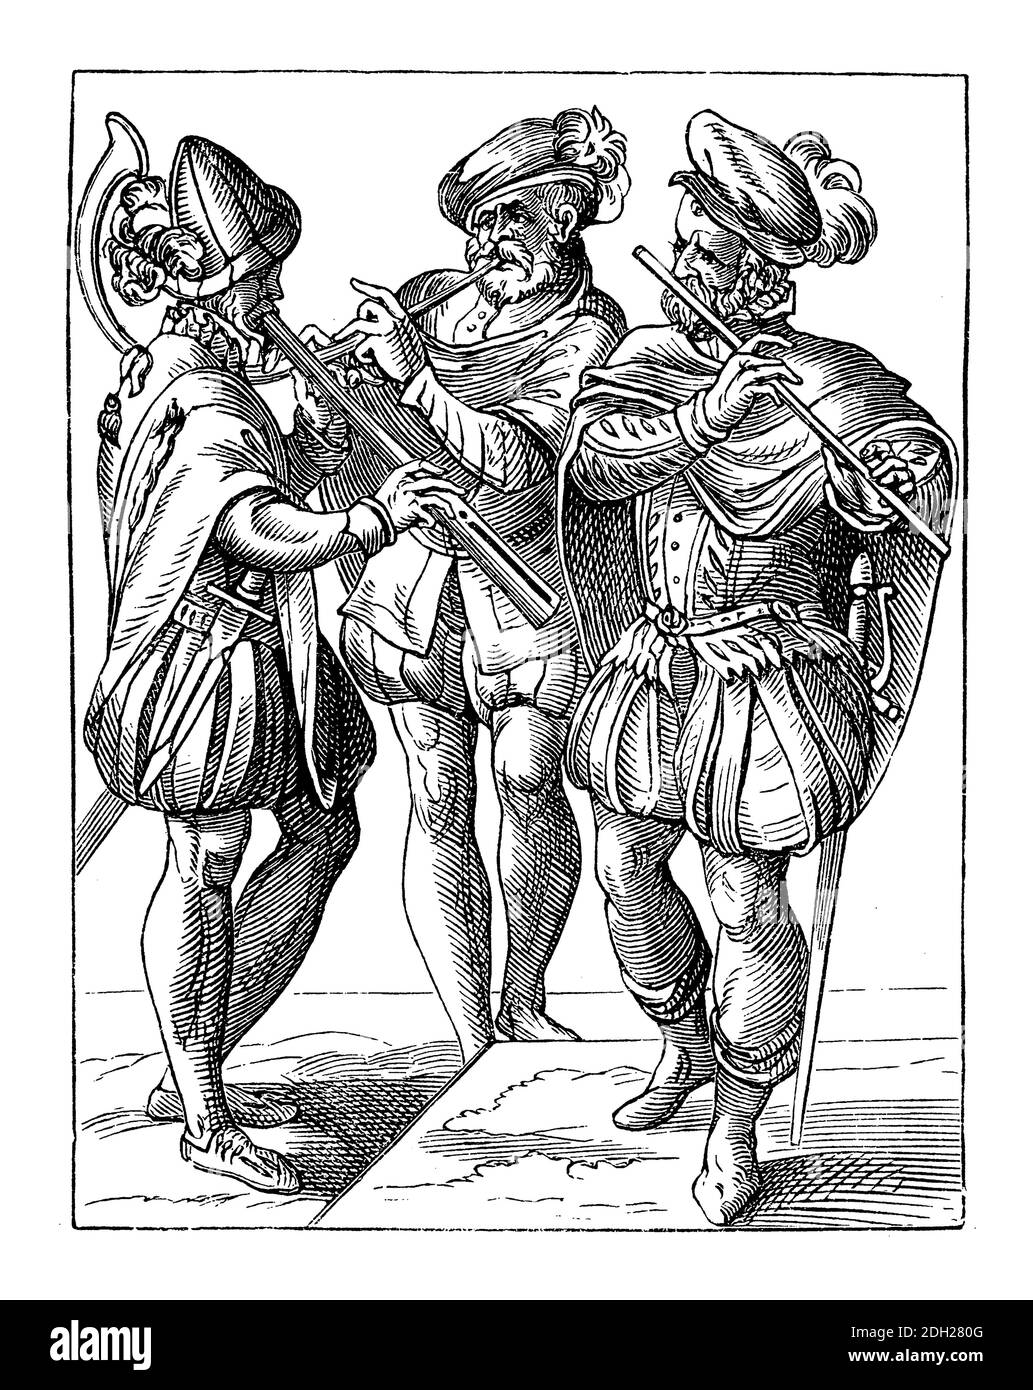 Musiciens allemands jouant des instruments à vent, coupe de bois de Jost Amman, XVIe siècle Banque D'Images